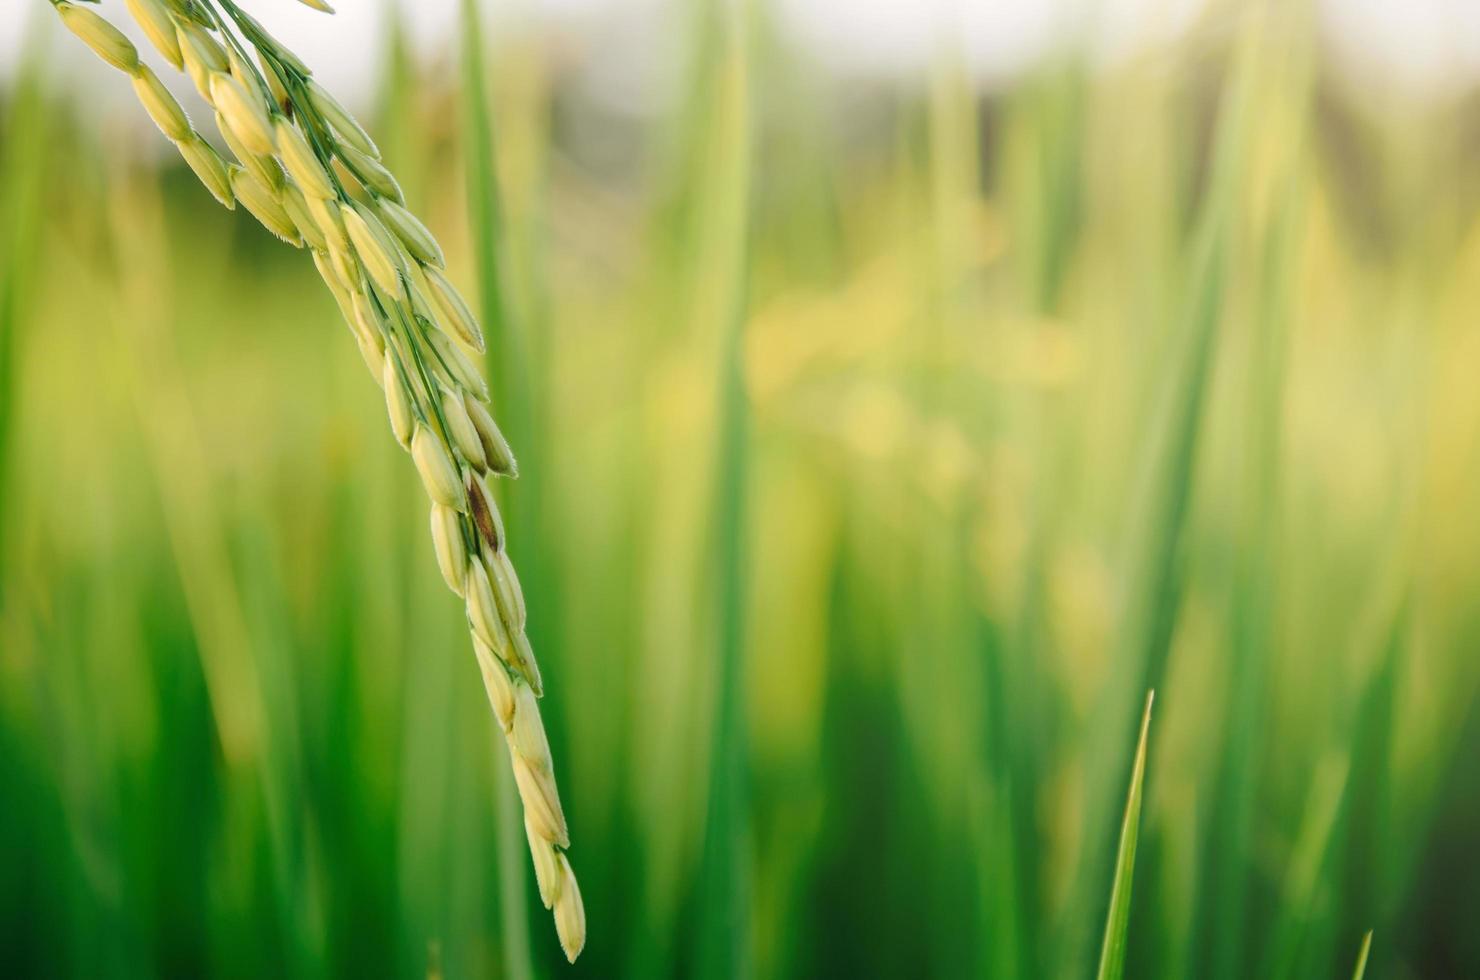 riz paddy et graines de riz dans la ferme, la rizière biologique et l'agriculture. photo